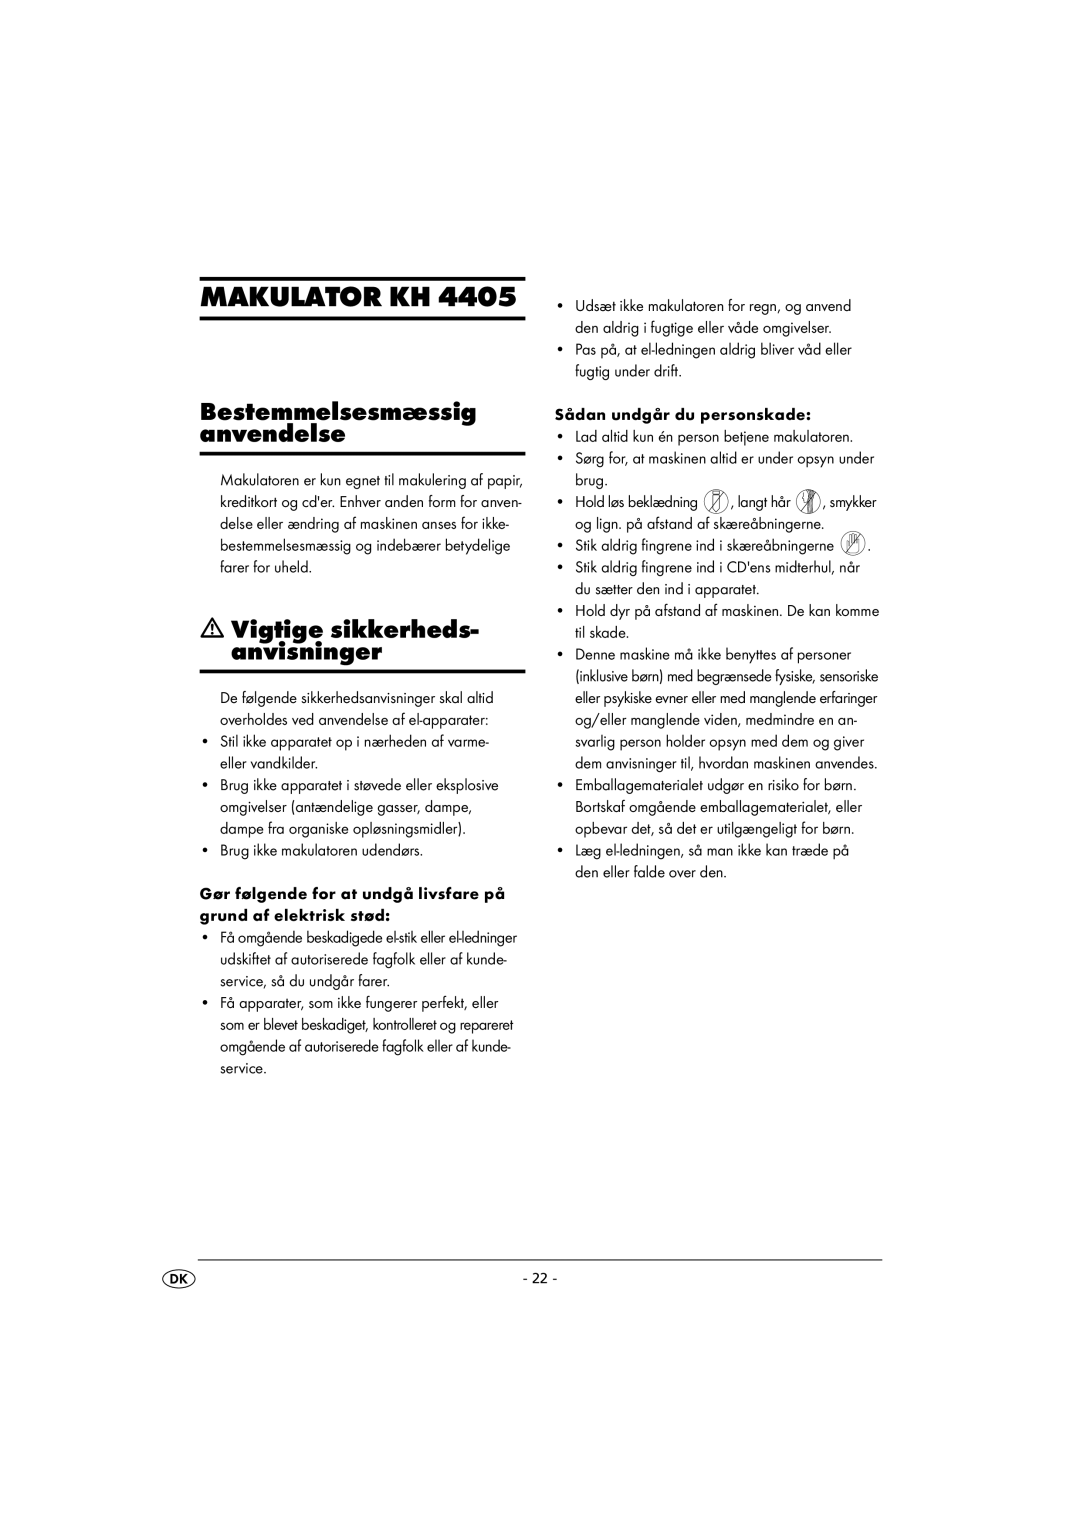 Kompernass KH 4405 manual Makulator Kh, Bestemmelsesmæssig anvendelse, Vigtige sikkerheds- anvisninger 